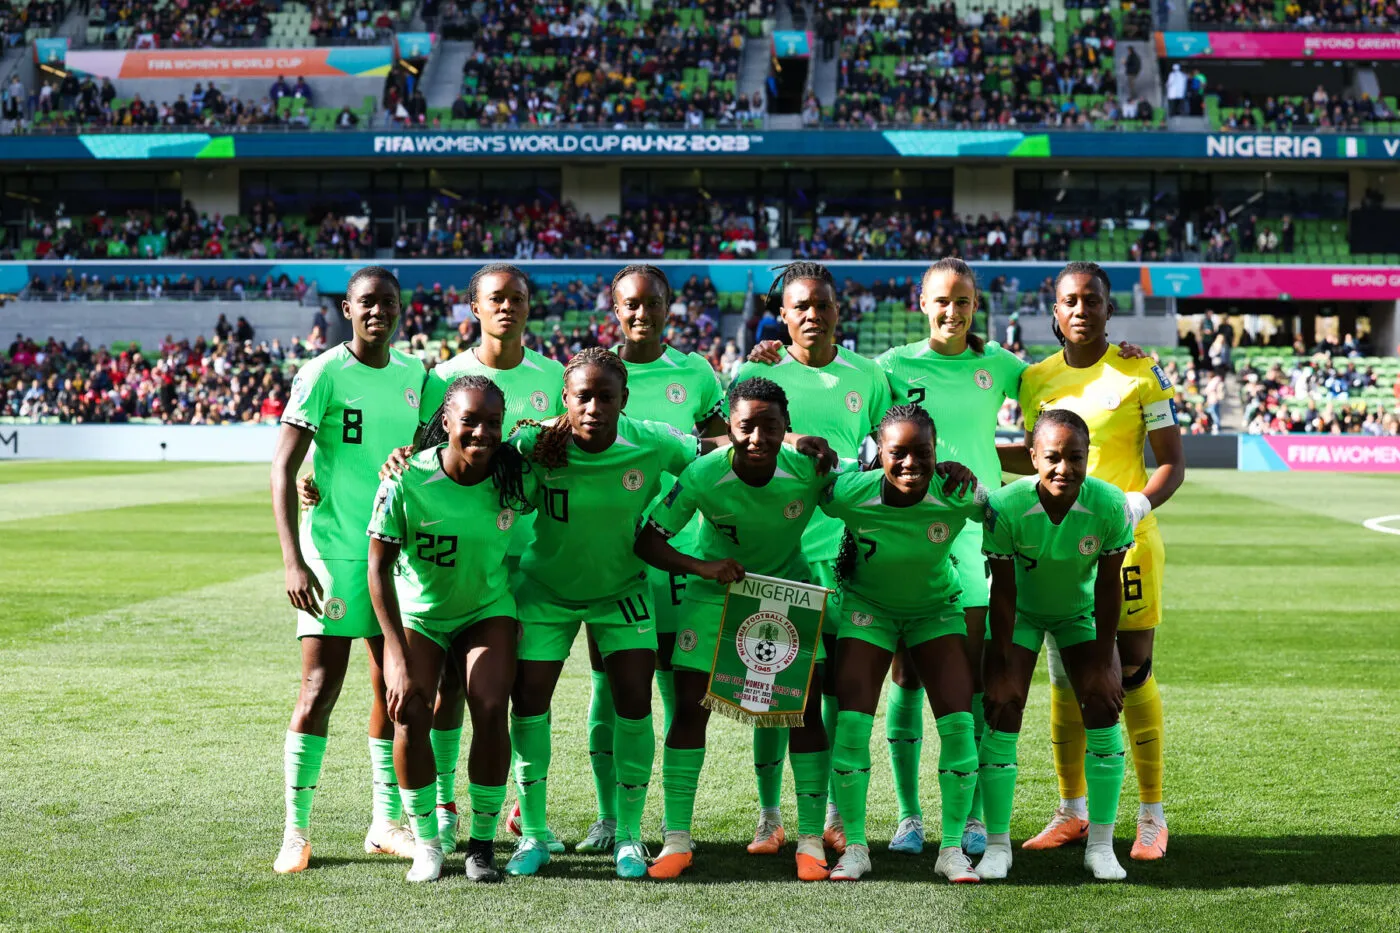 Pronostic Irlande Nigeria : Analyse, cotes et prono du match de la Coupe du monde féminine